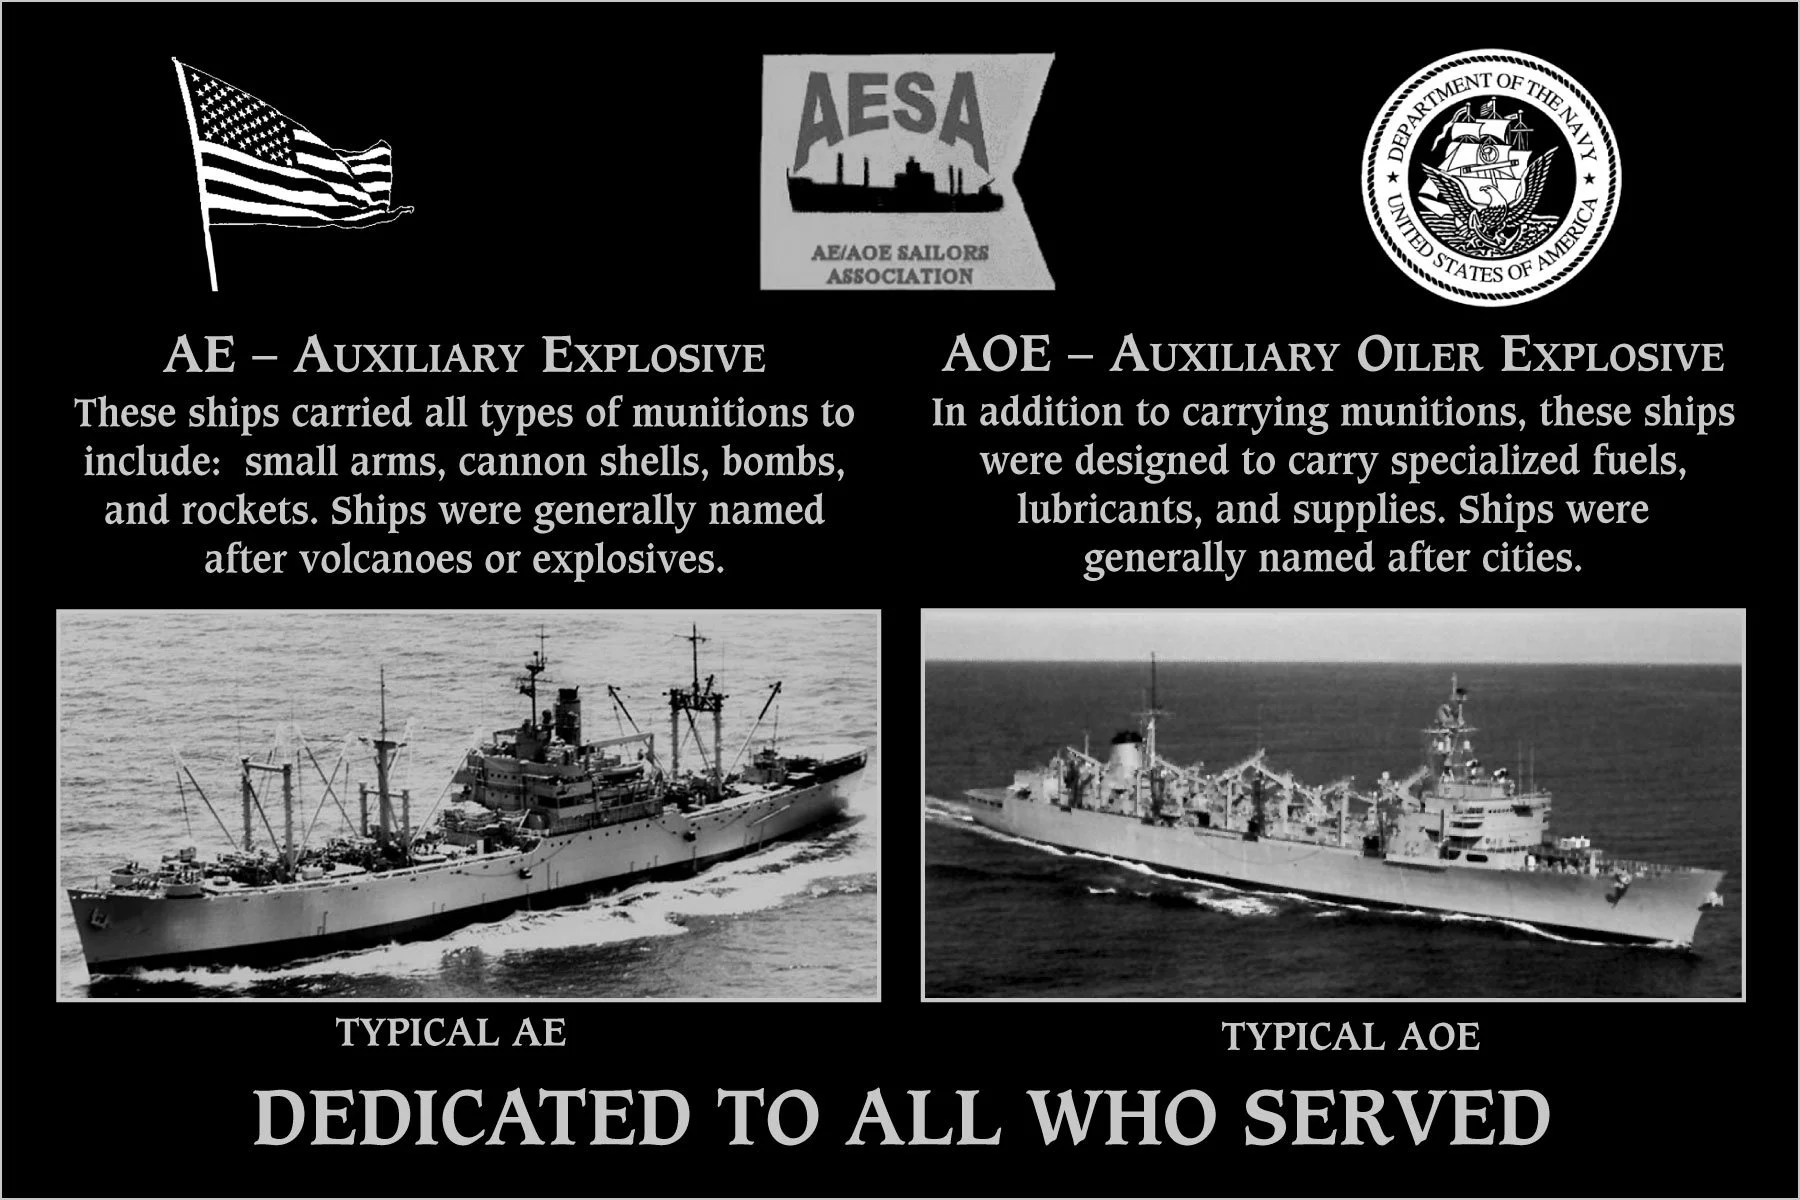 AE/AOE Sailors Association 2